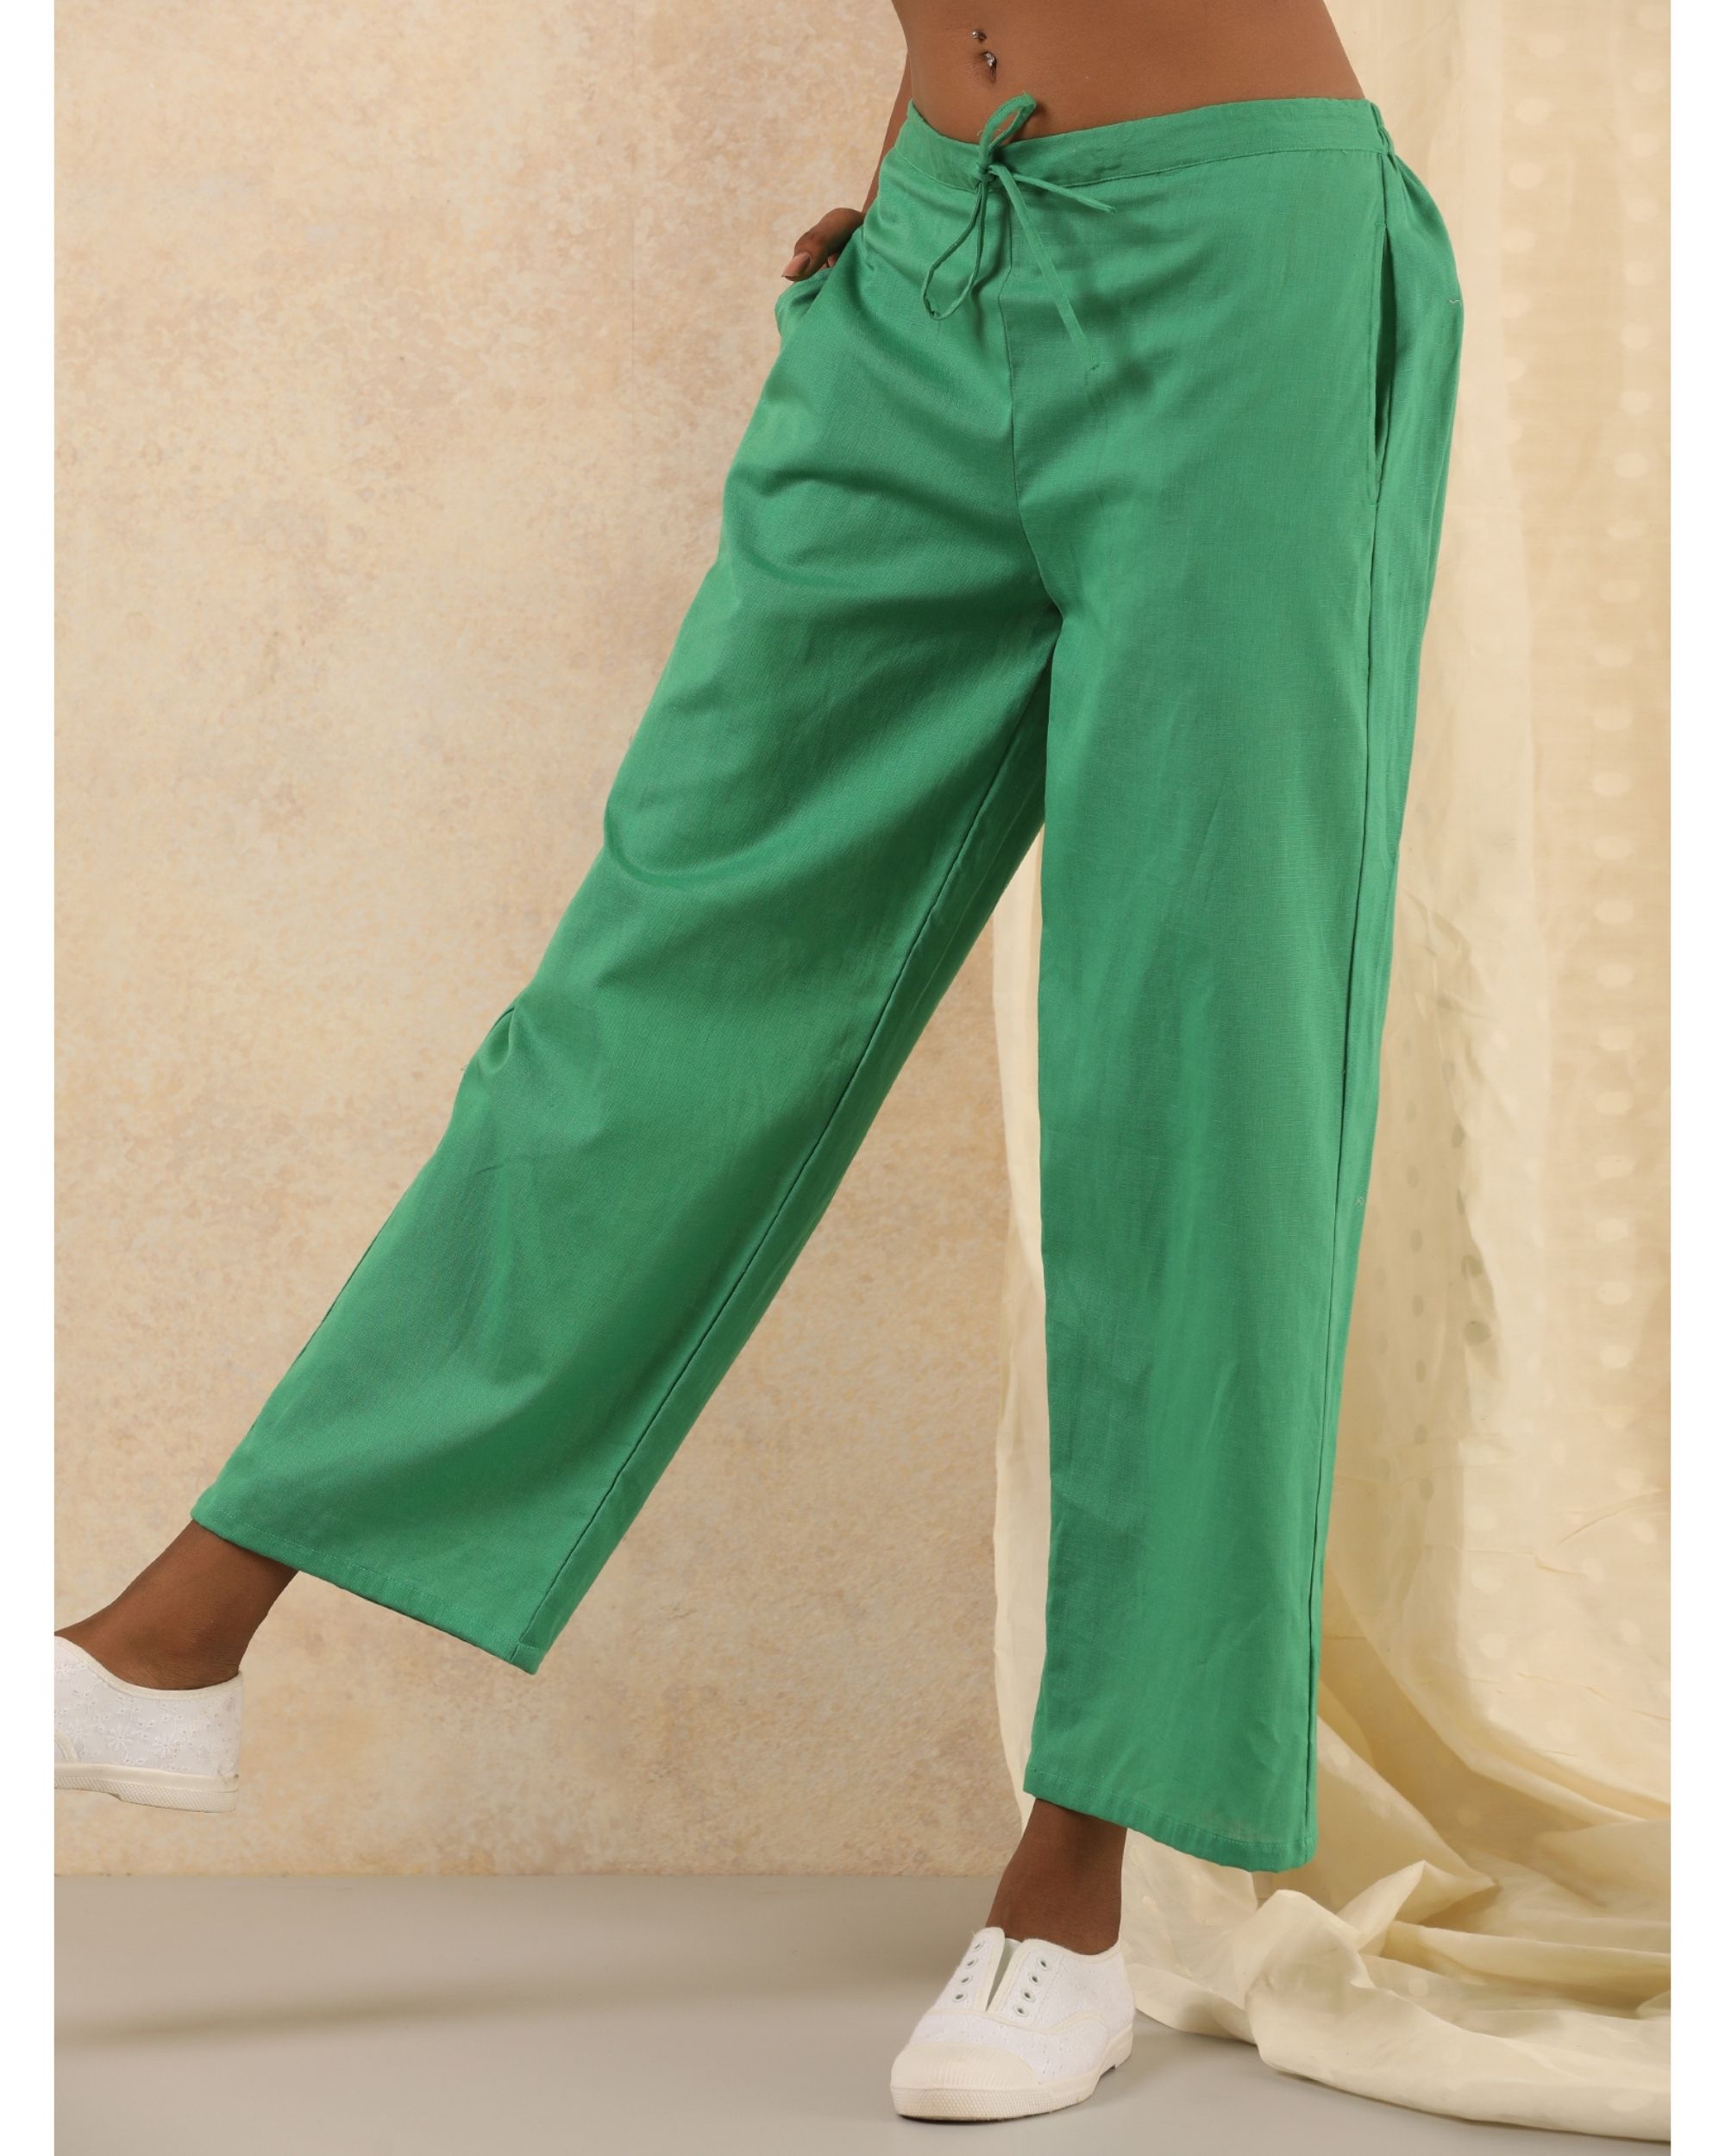 Green linen pants